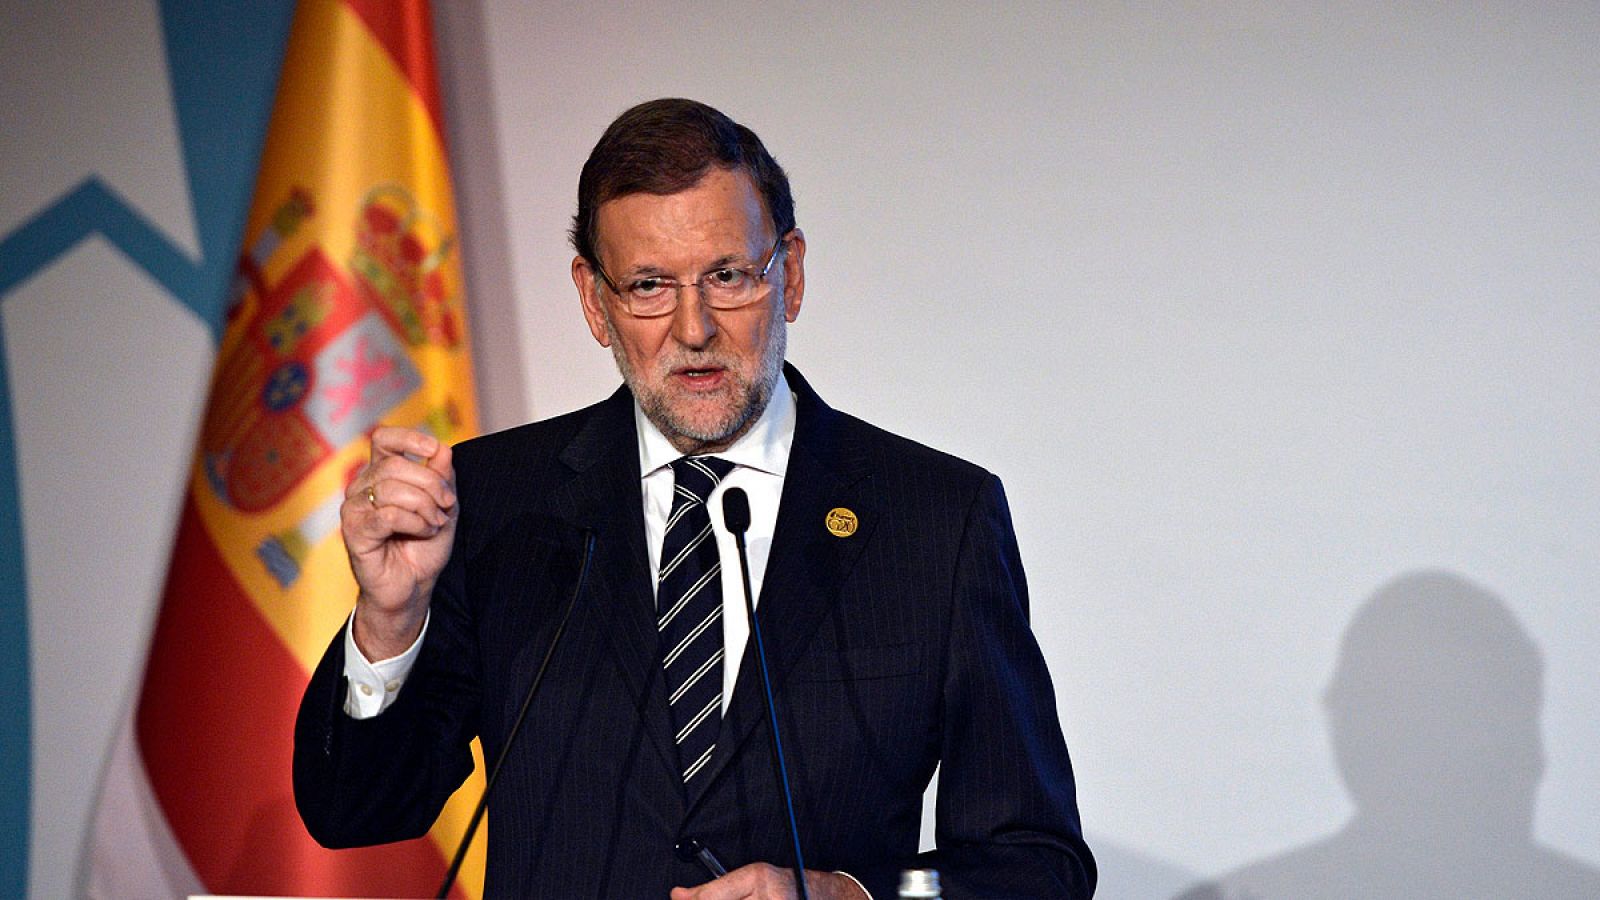 El presidente del Gobierno español, Mariano Rajoy, durante una rueda de prensa